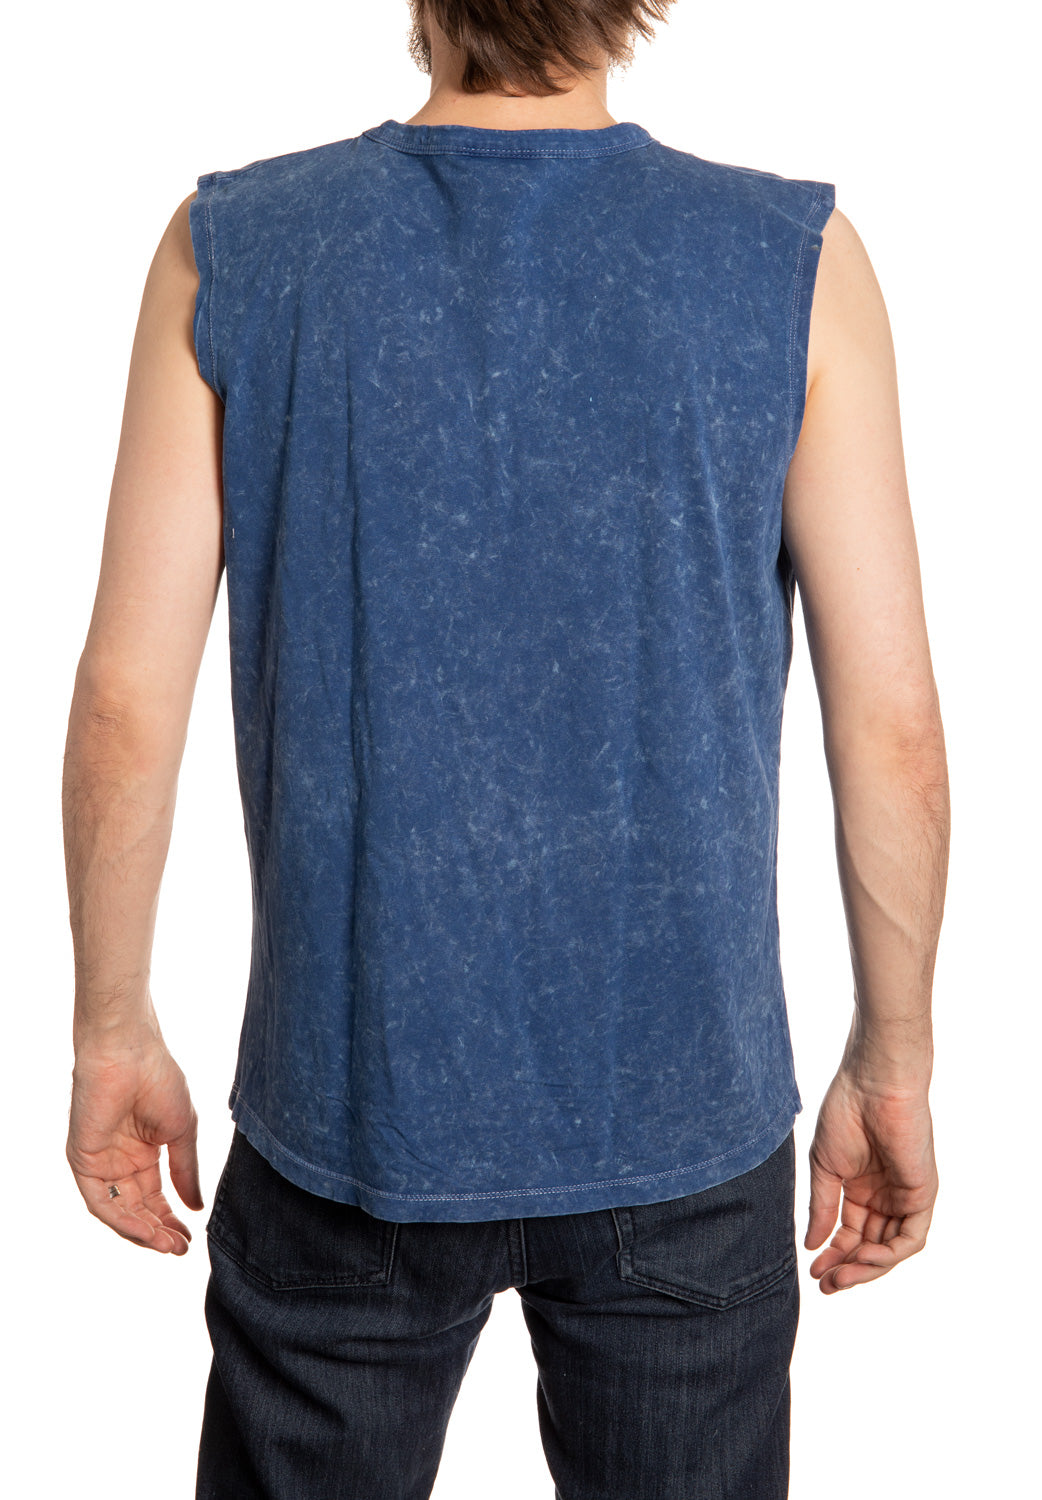 New York Rangers Acid Washed Sleeveless Shirt